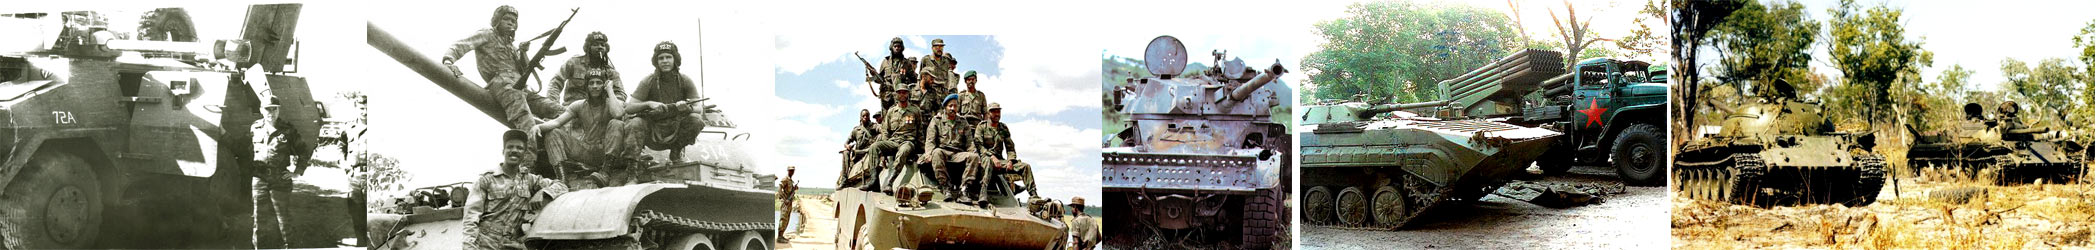 Танковый Музей Сомюр, война в Анголе бронетехника